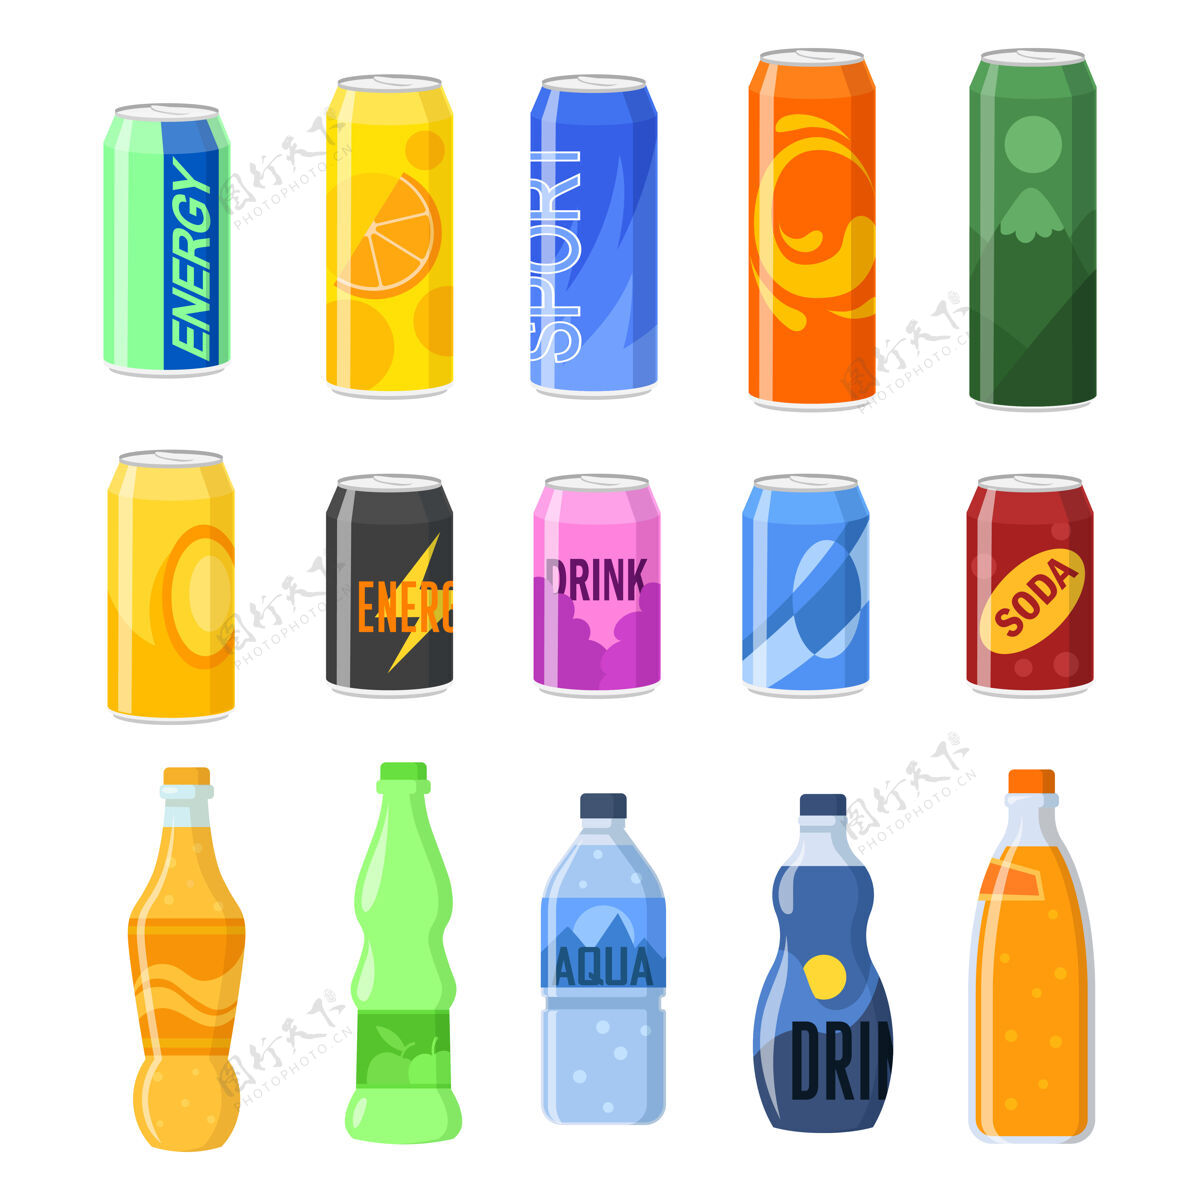 不健康饮料罐和塑料瓶插图集瓶盖卡通水